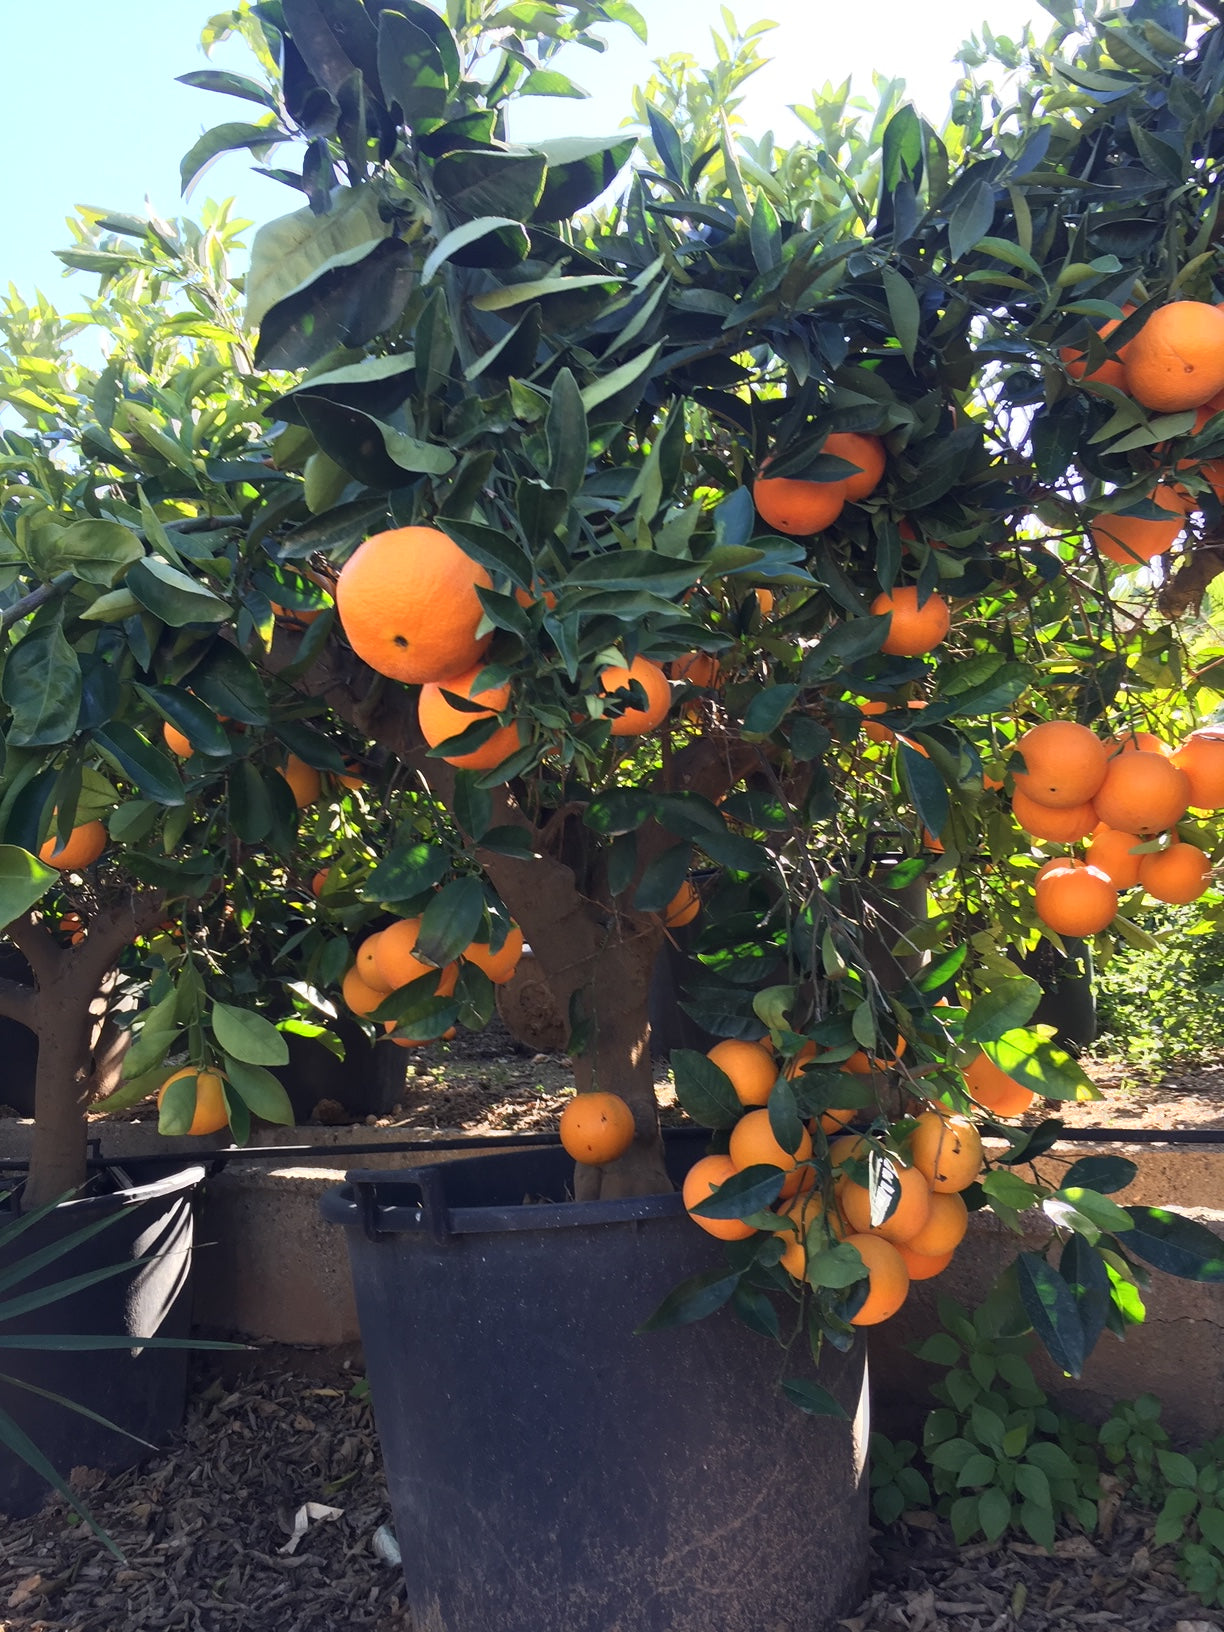 appelsien appelsienboom sinaasappelboom sinaasappel citrus